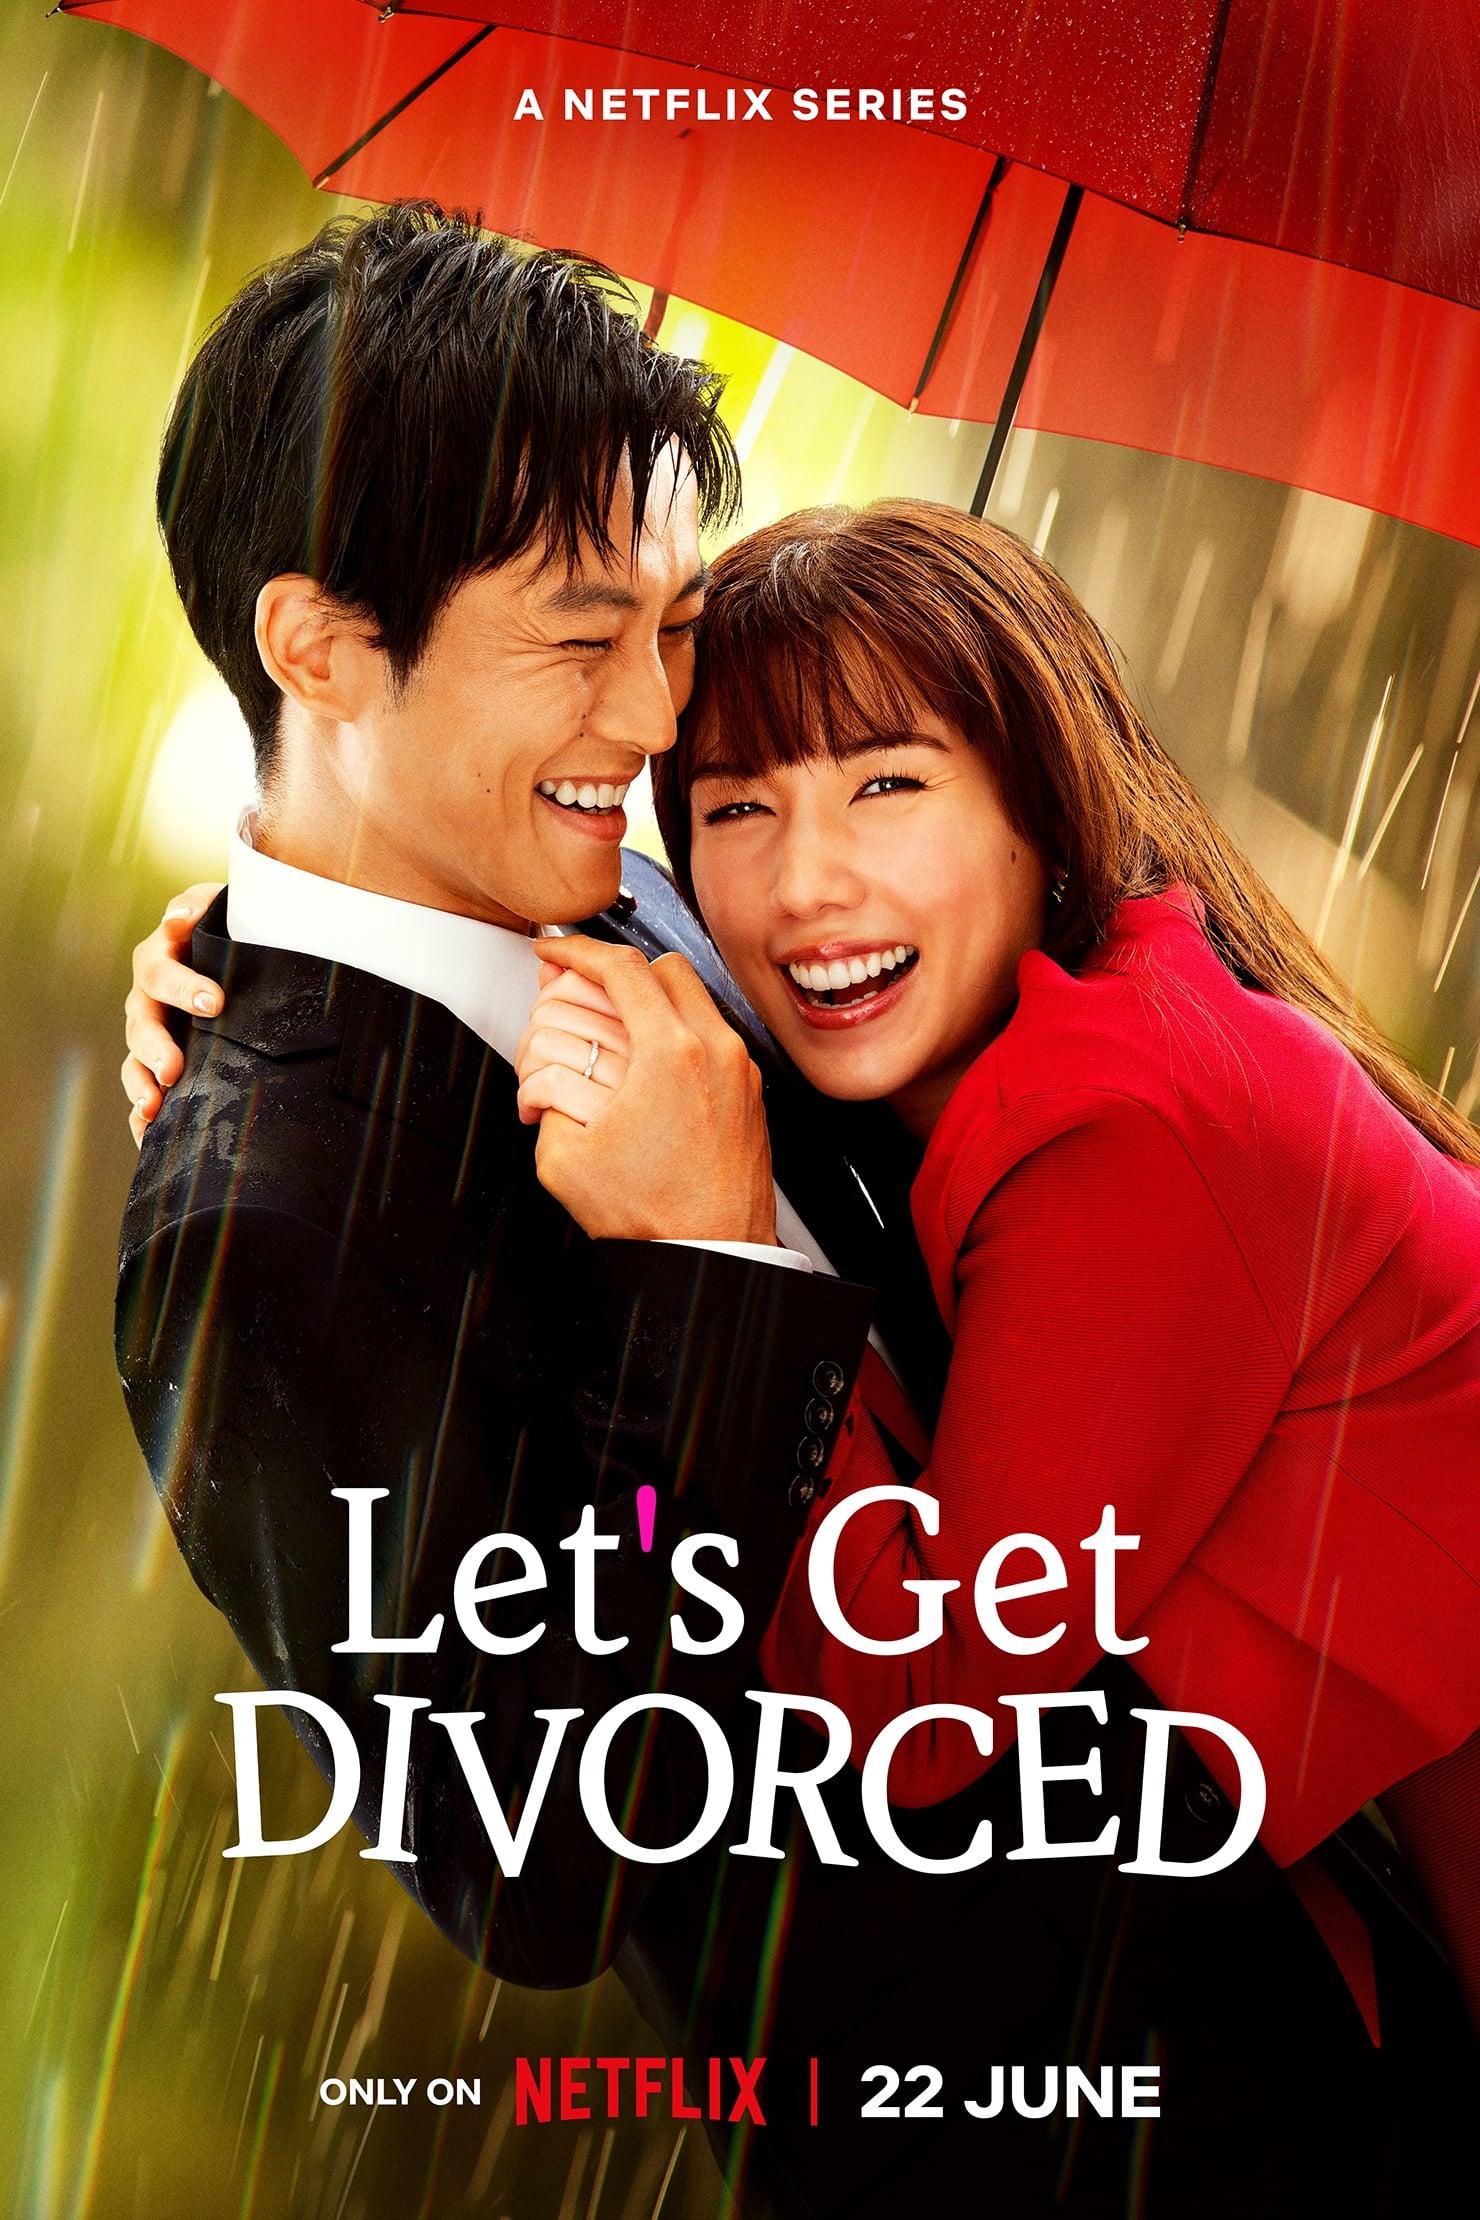 Let's Get Divorced poster